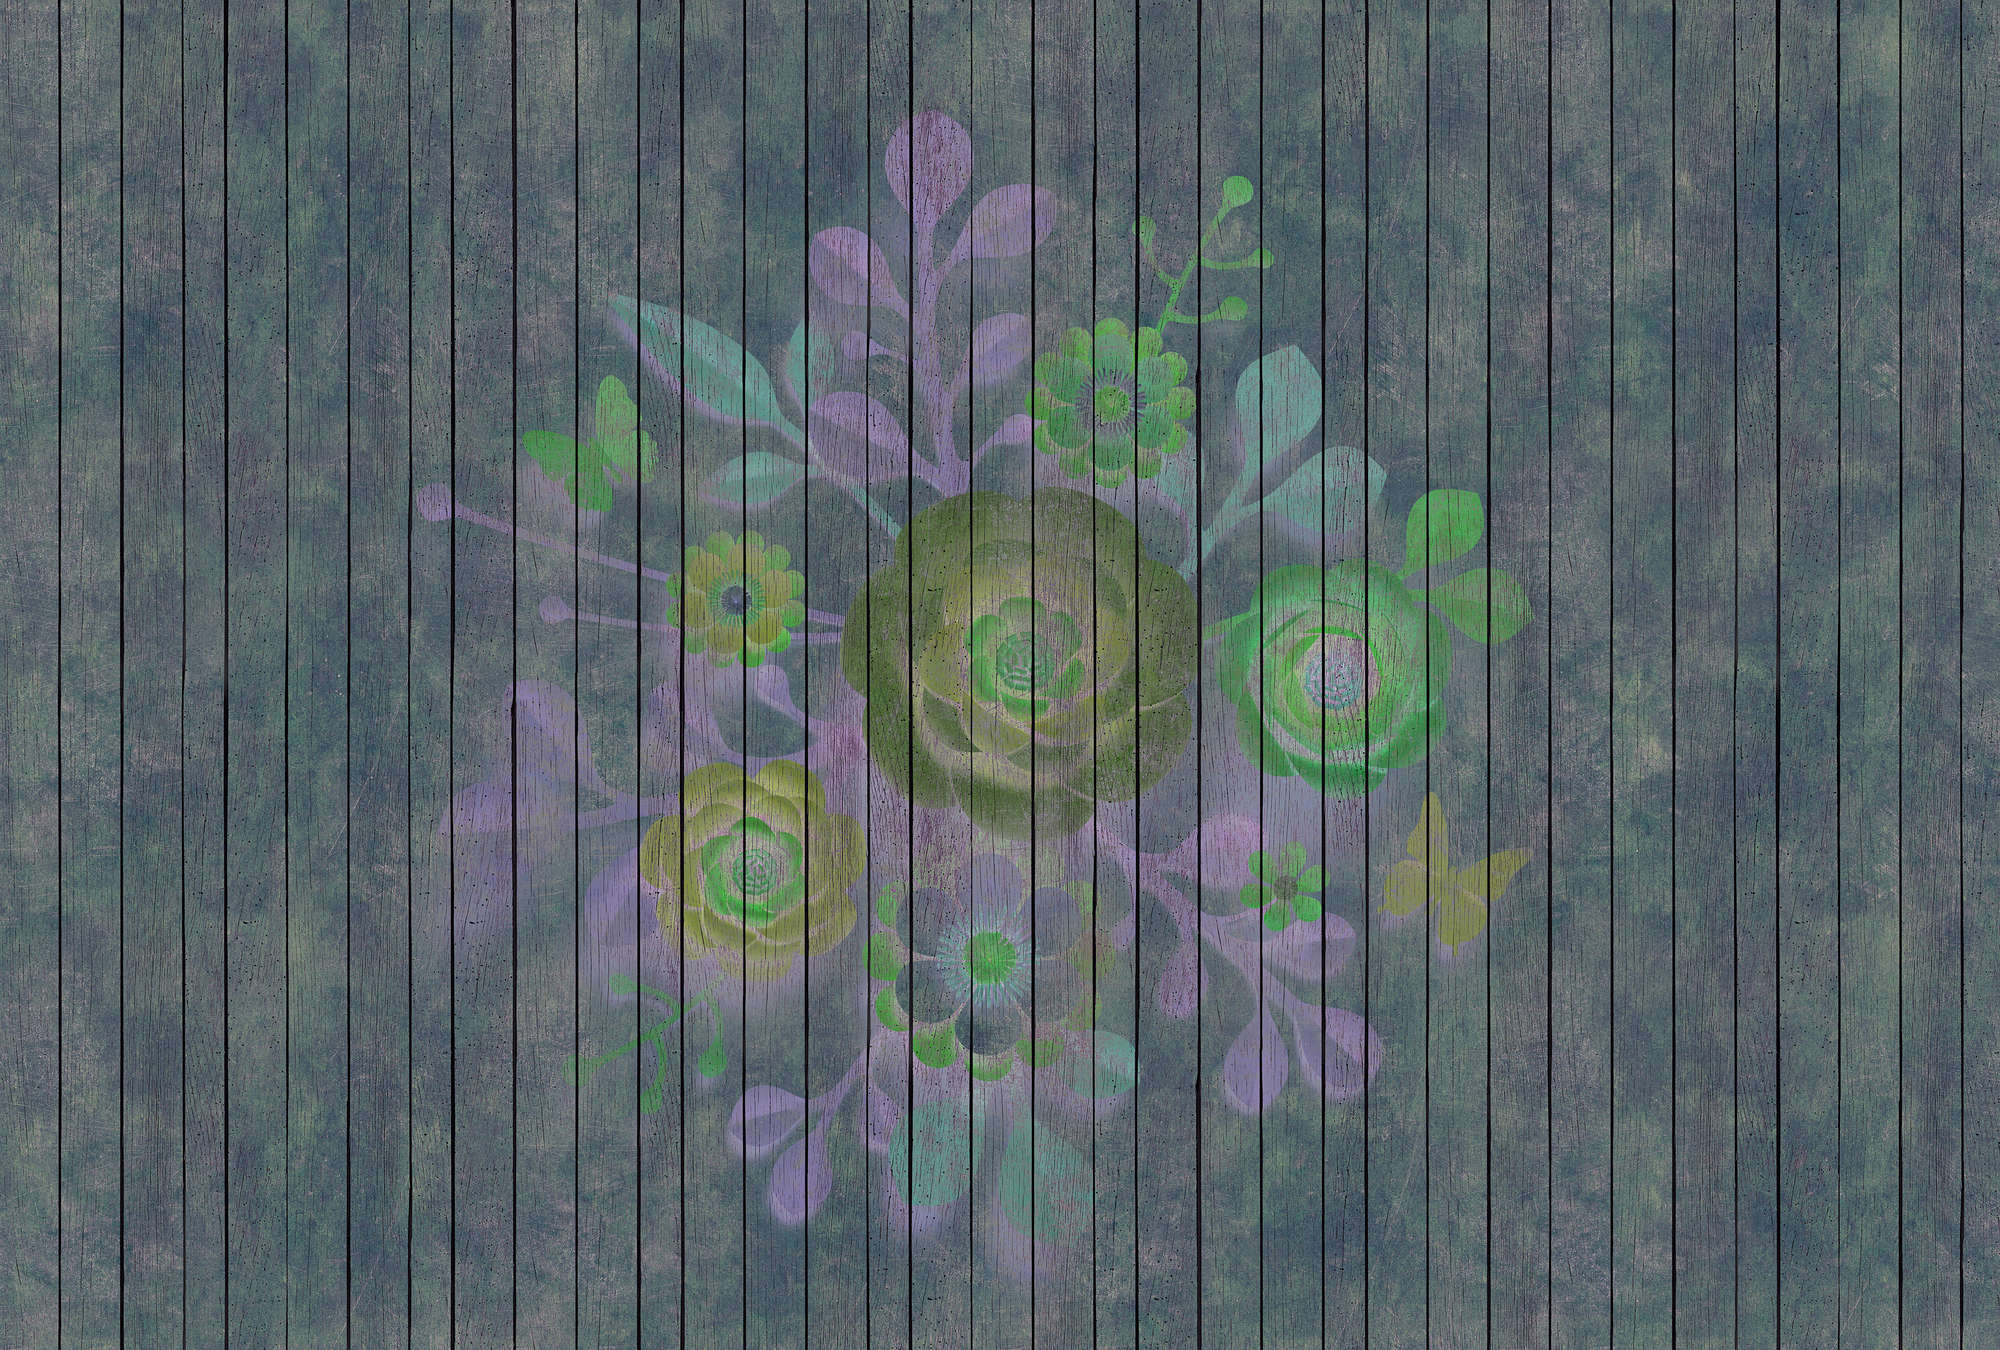             Spray Bouquet 2 - Fototapete in Holzpaneele Struktur mit Blumen auf Bretterwand – Blau, Grün | Mattes Glattvlies
        